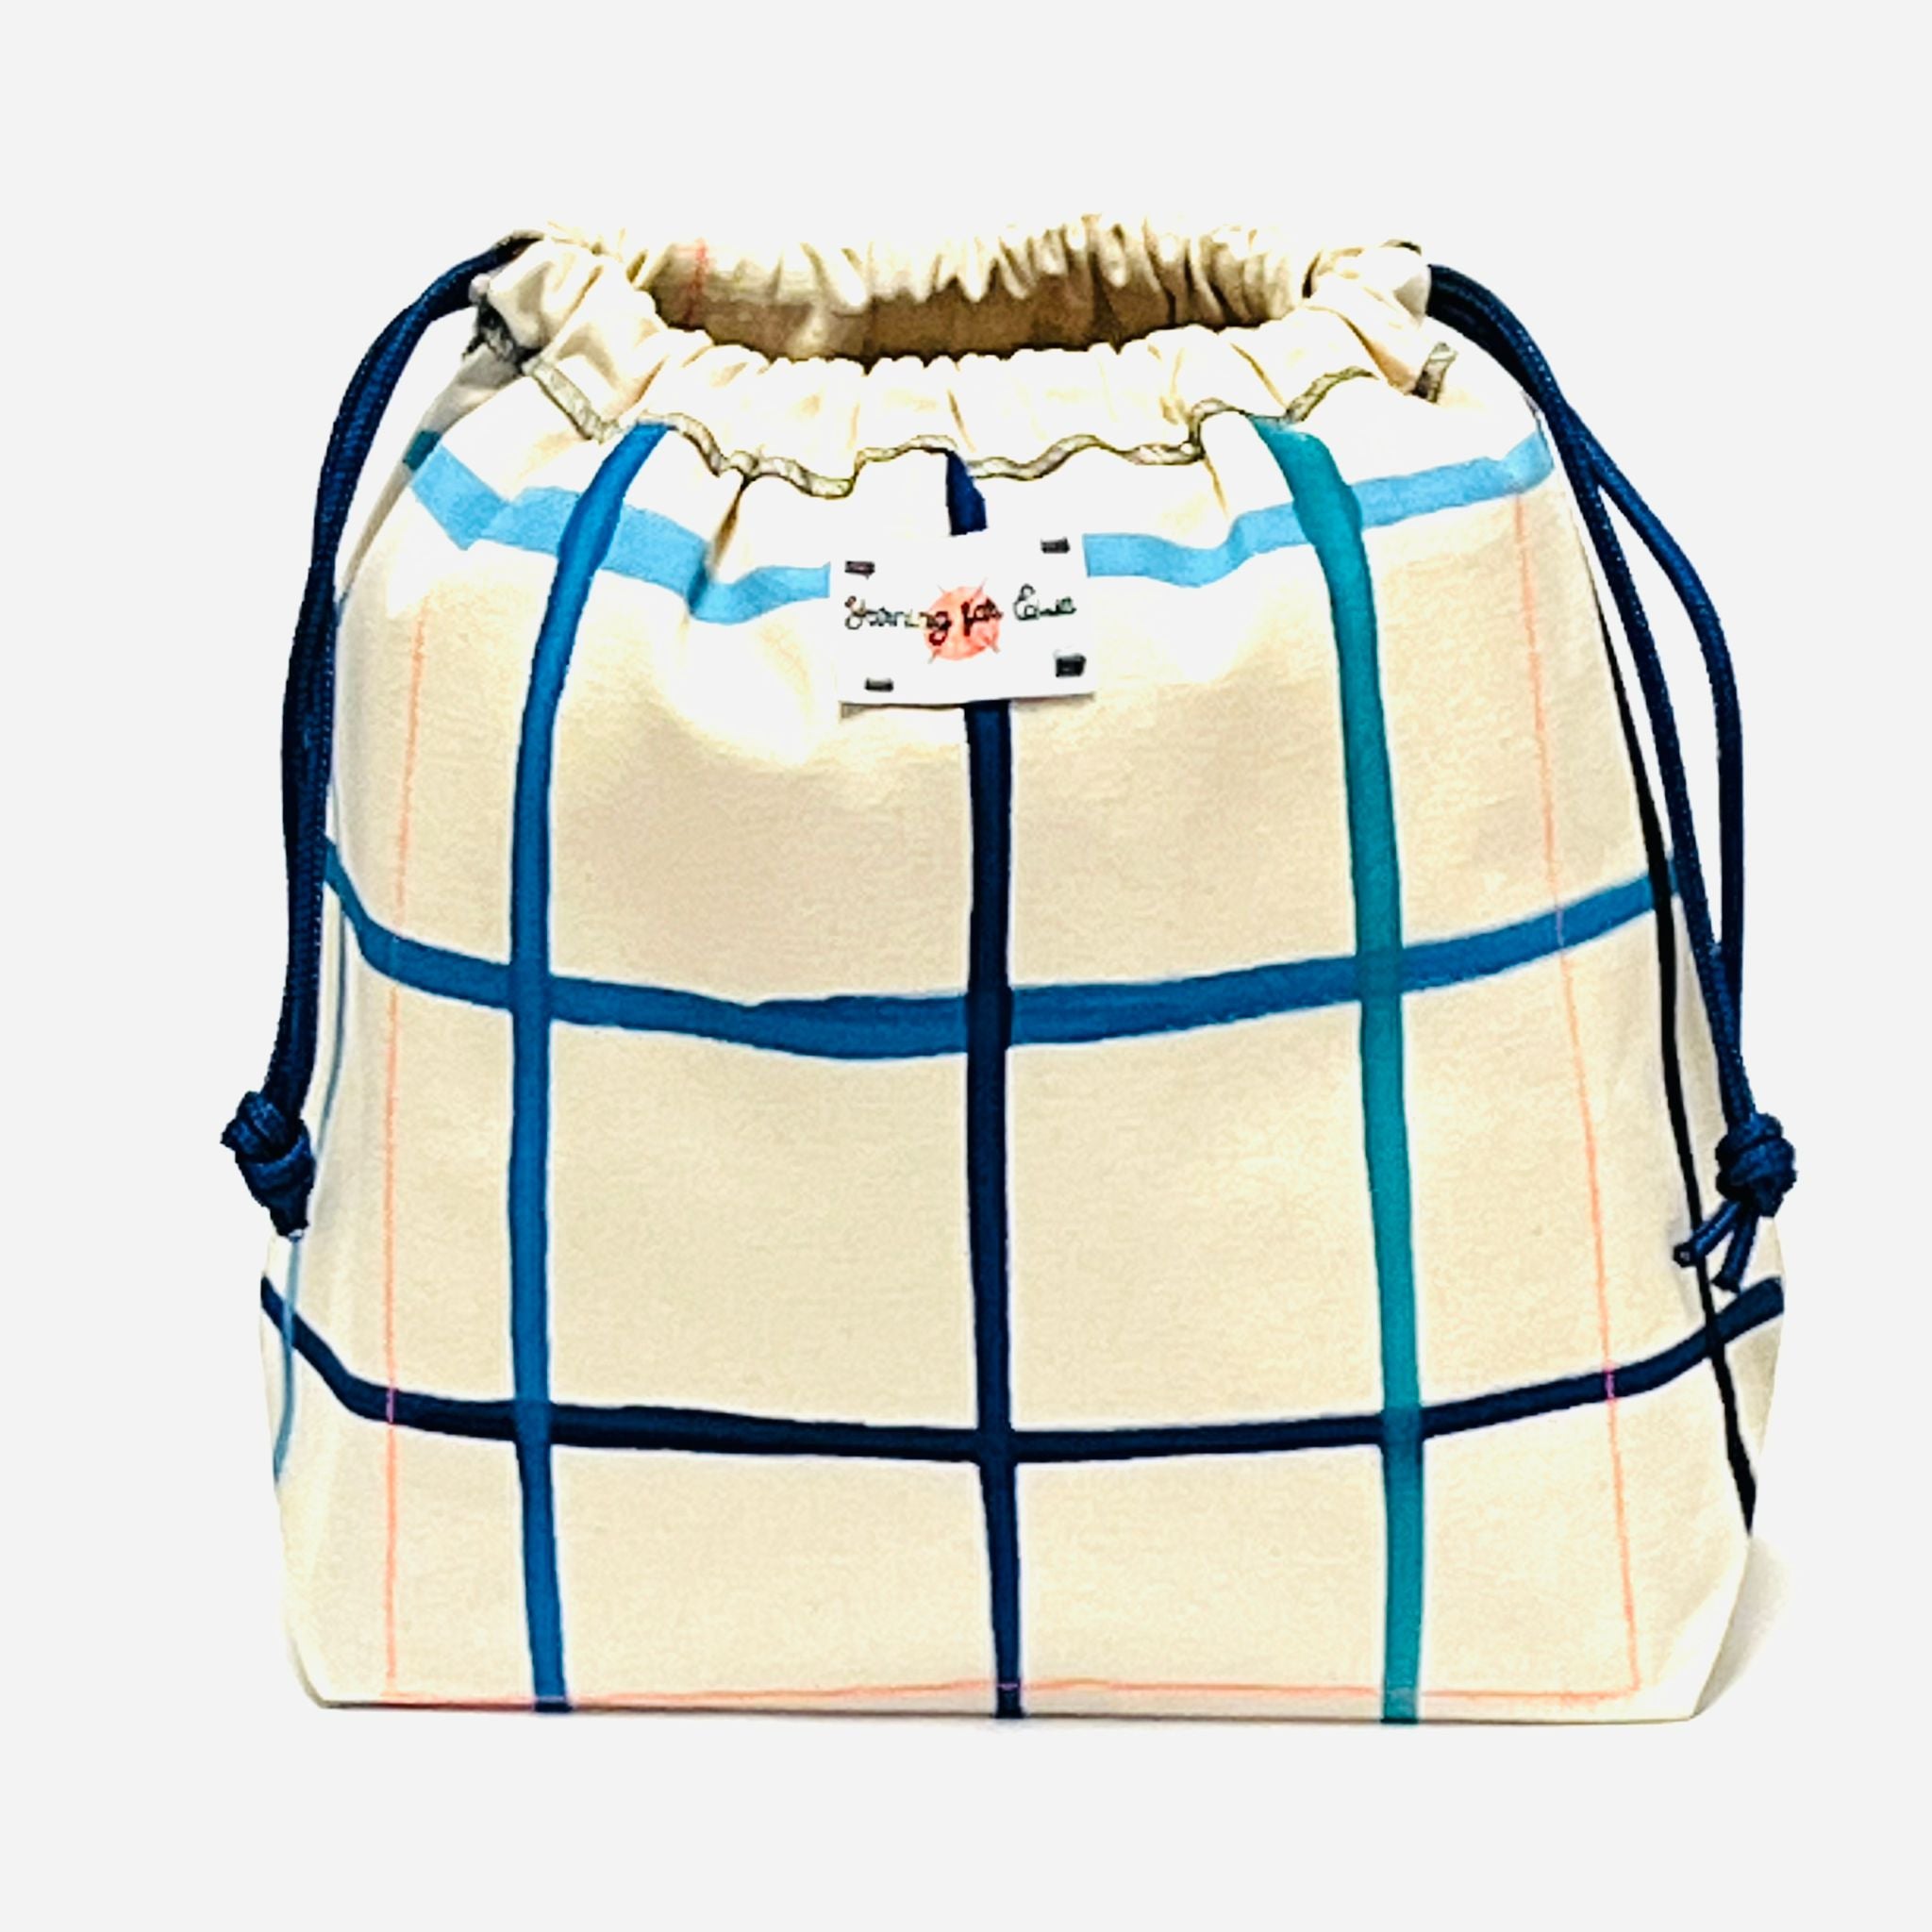 Waterproof Bags & Cases